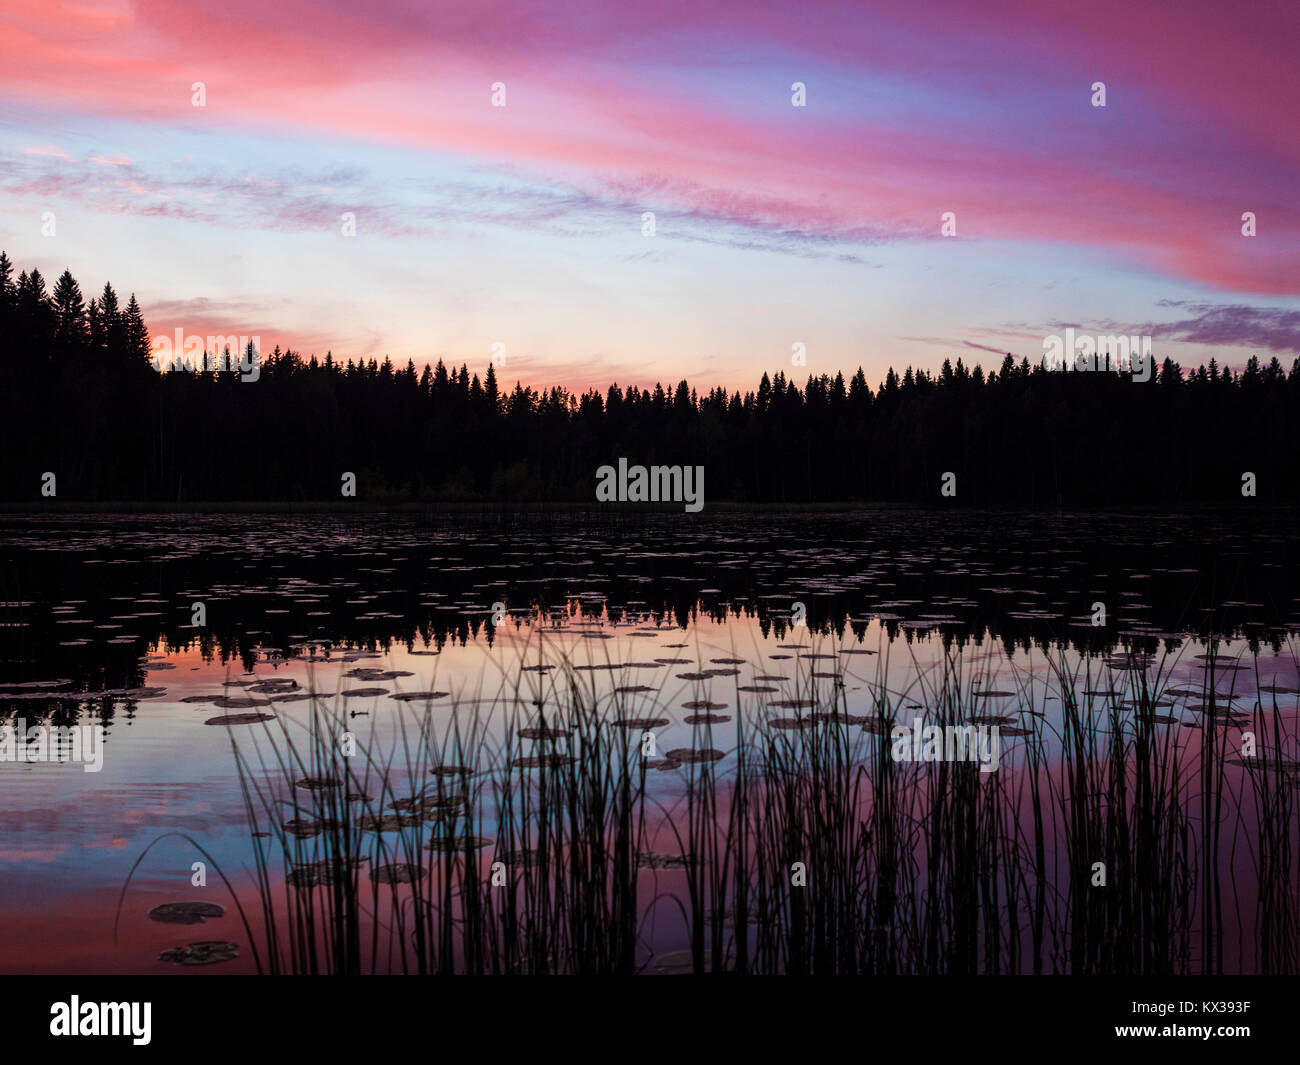 Amazing Sunset Lakeside View - Finland Stock Photo